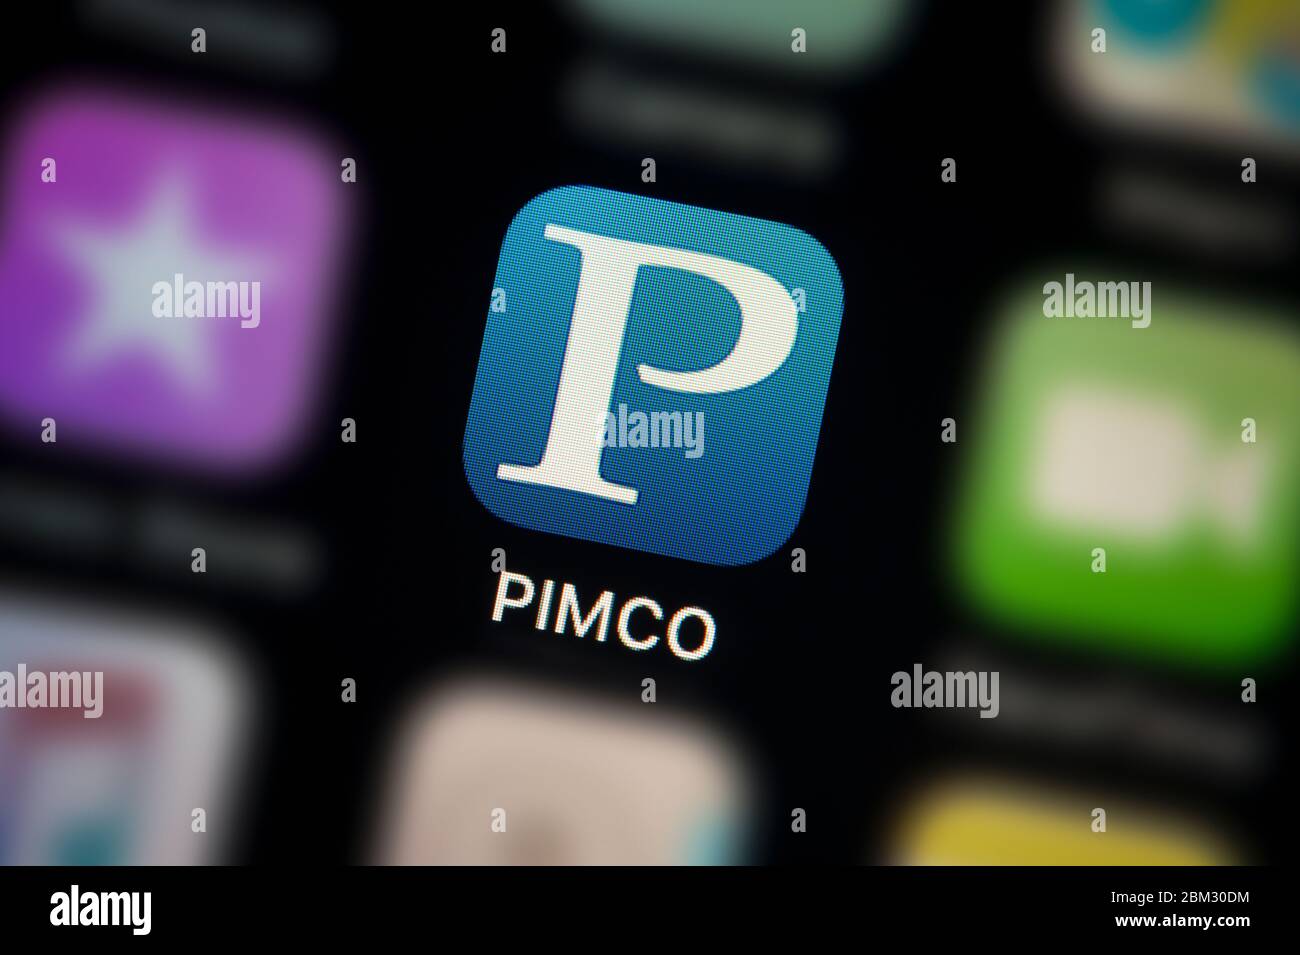 Nahaufnahme des PIMCO App-Symbols, wie auf dem Bildschirm eines Smartphones zu sehen (nur für redaktionelle Verwendung) Stockfoto